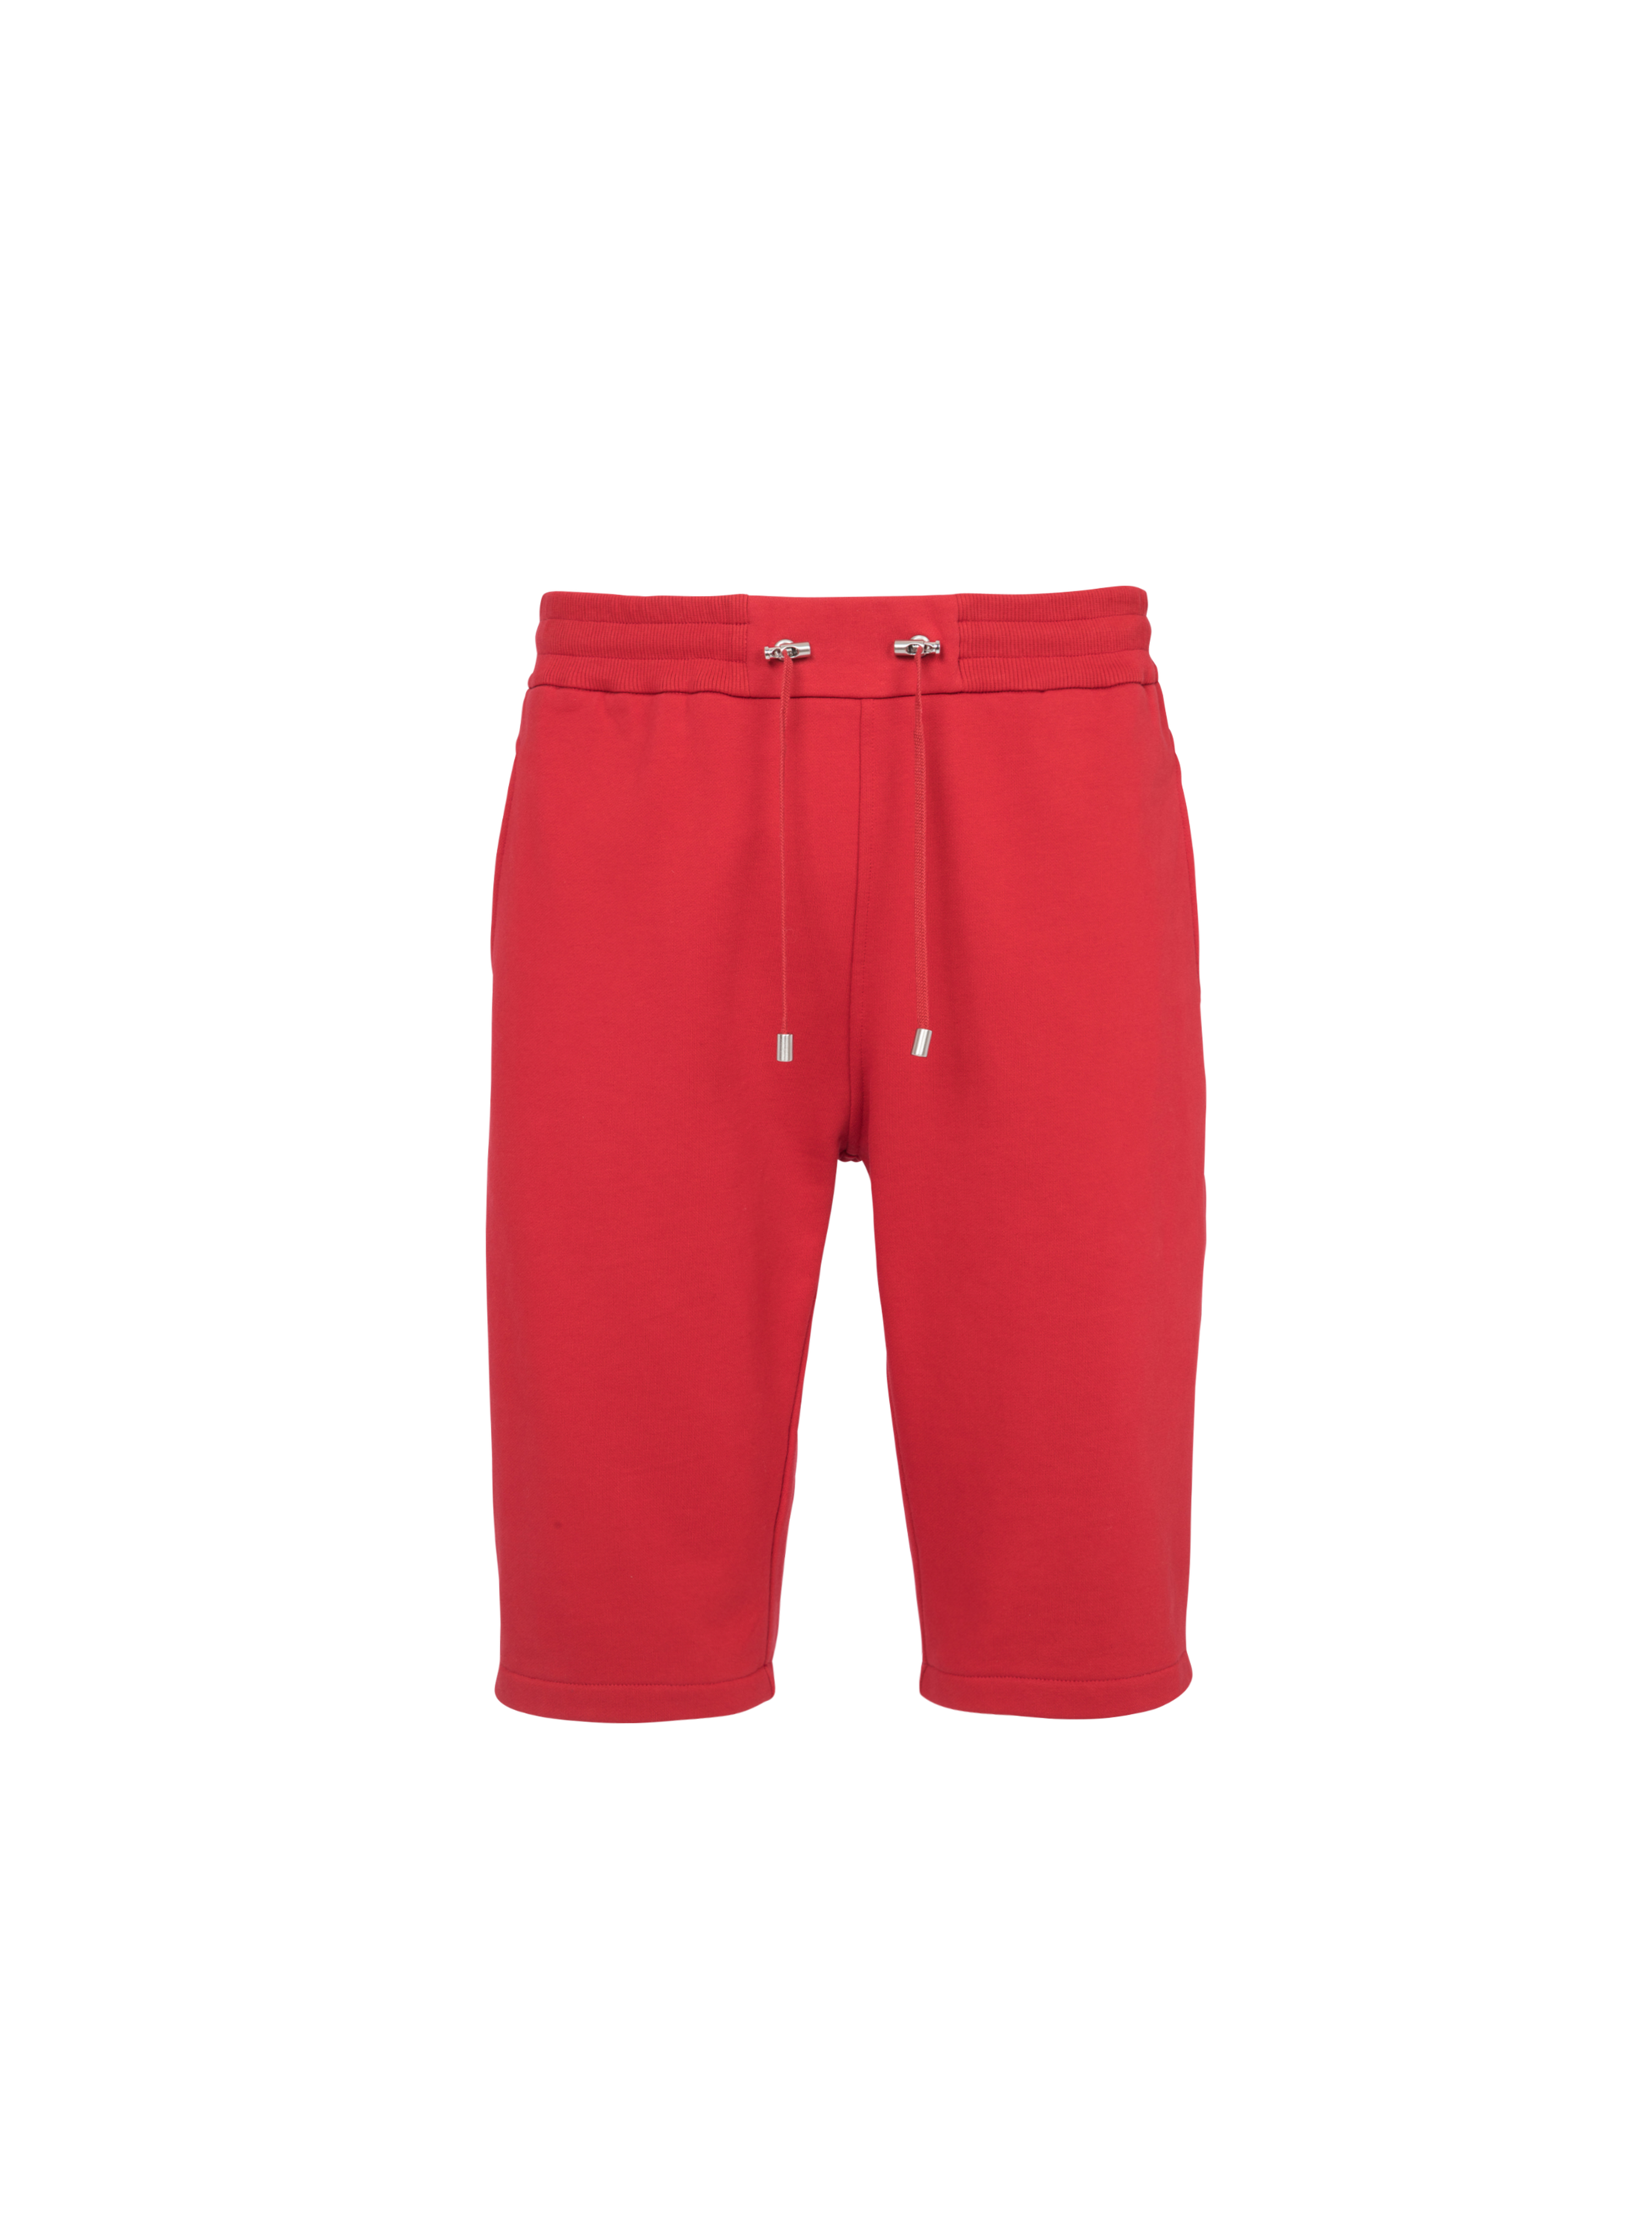 Pantalones cortos de algodón con el logotipo flocado de Balmain Paris, rojo